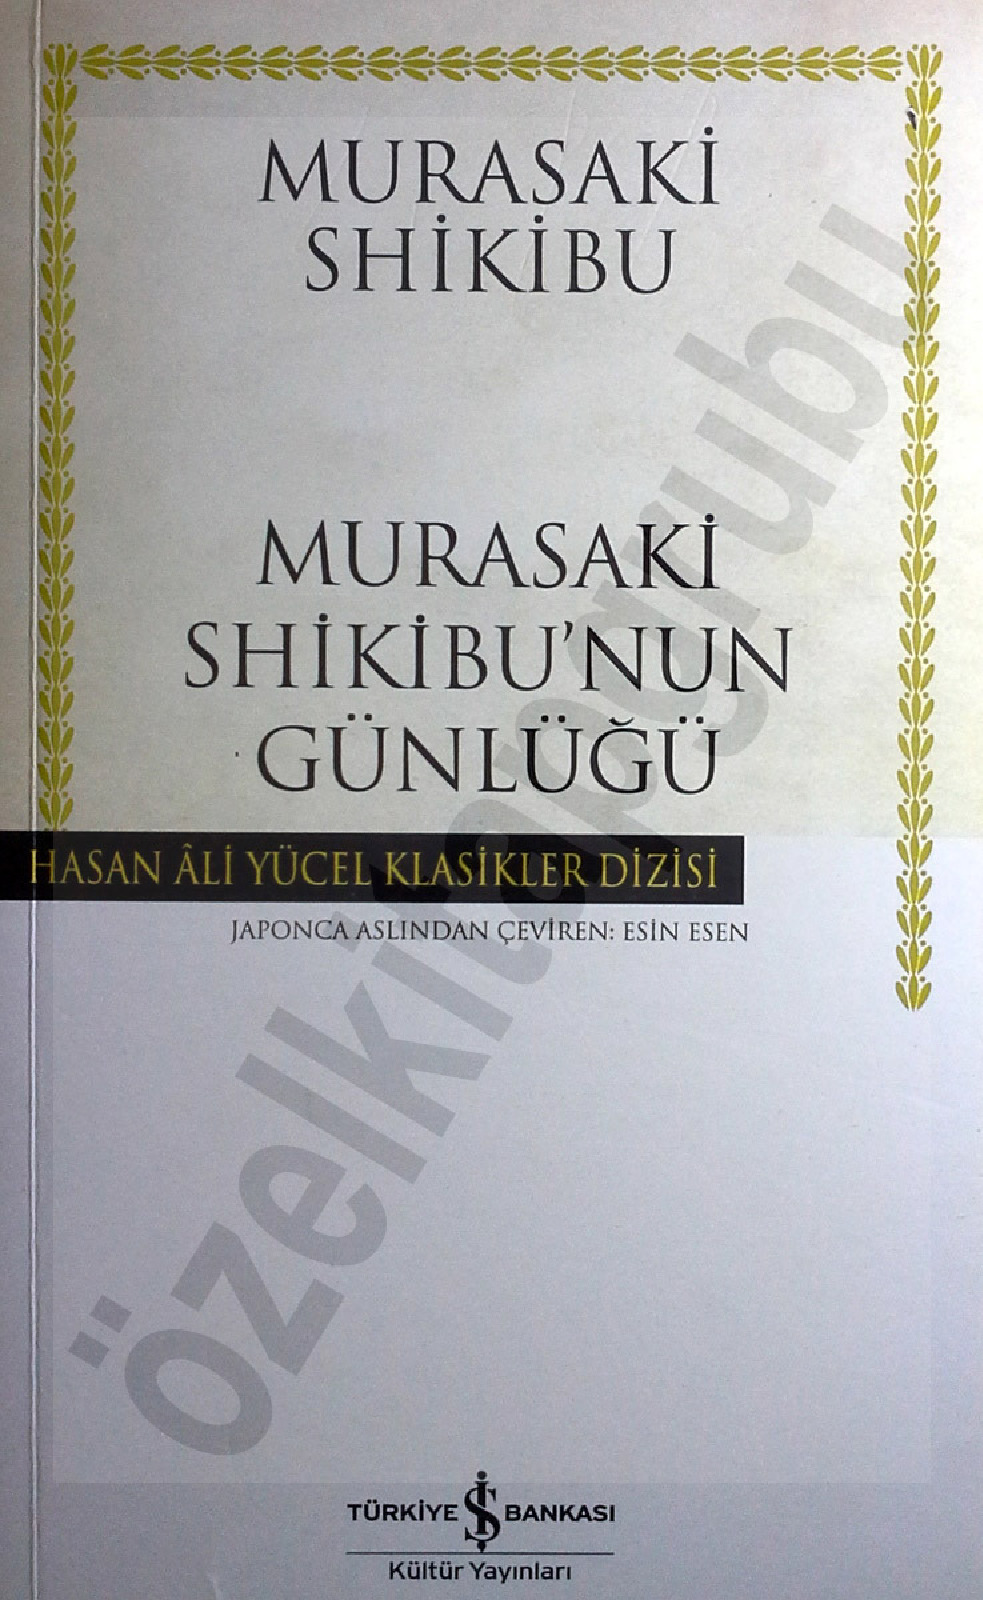 Murasaki Shikibunun Günlüğü-Murasaki Shikibu-Esin Esen-2012-135s